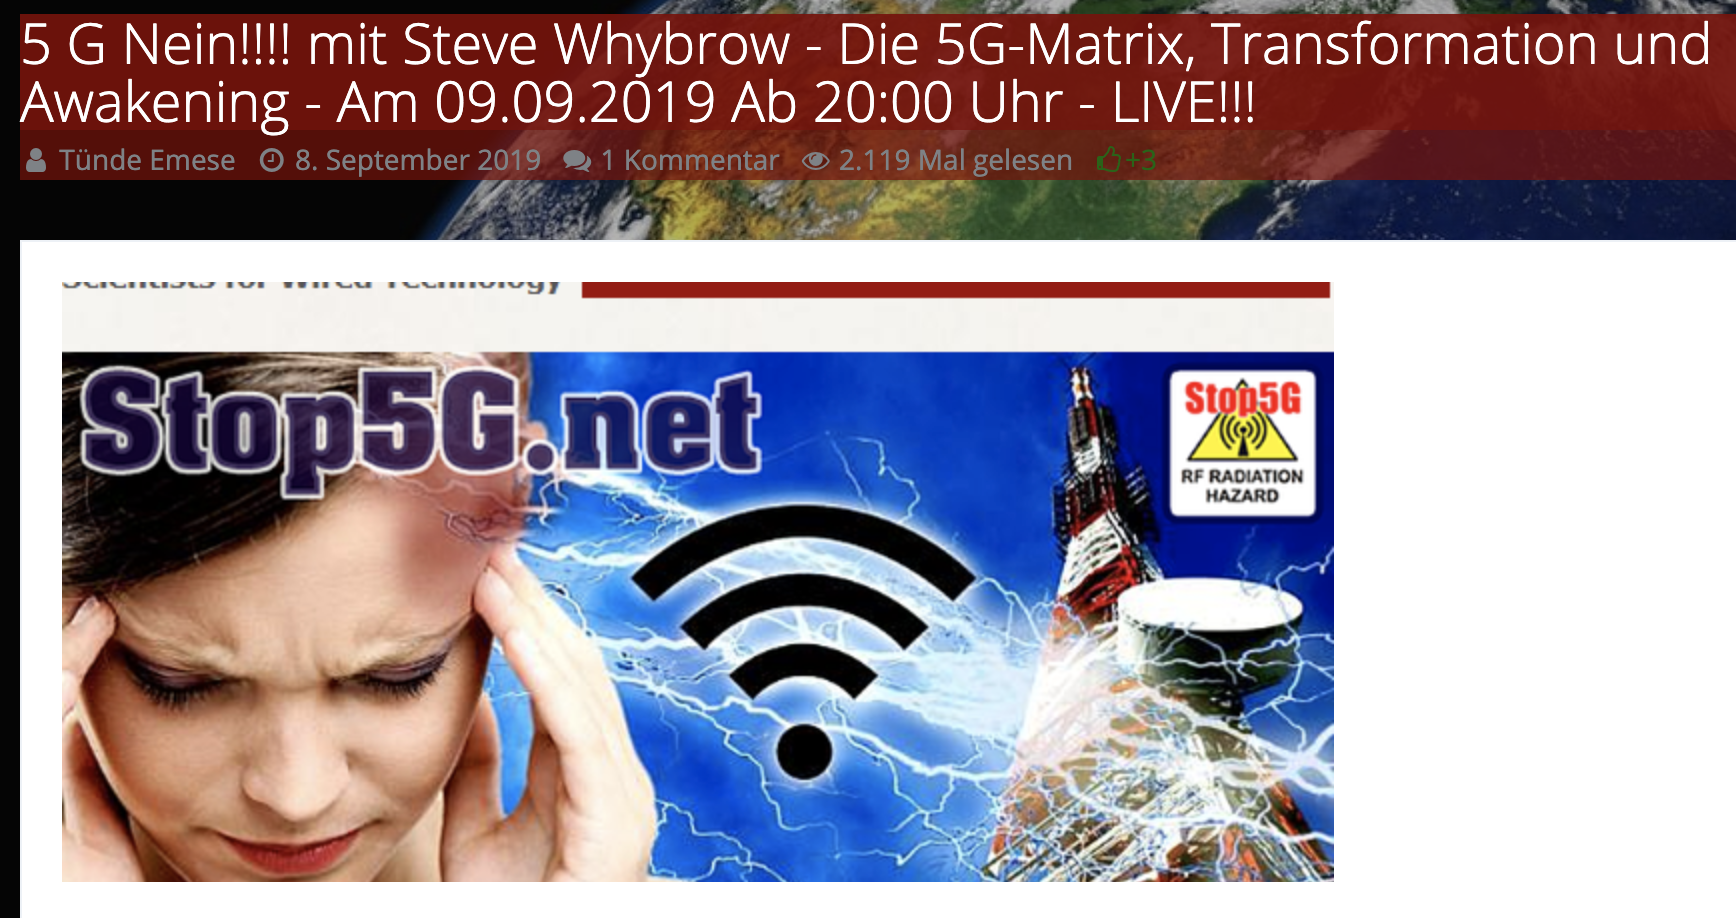 Steve Whybrow über "die 5G-Matrix, Transformation und Awakening" auf Okitalk